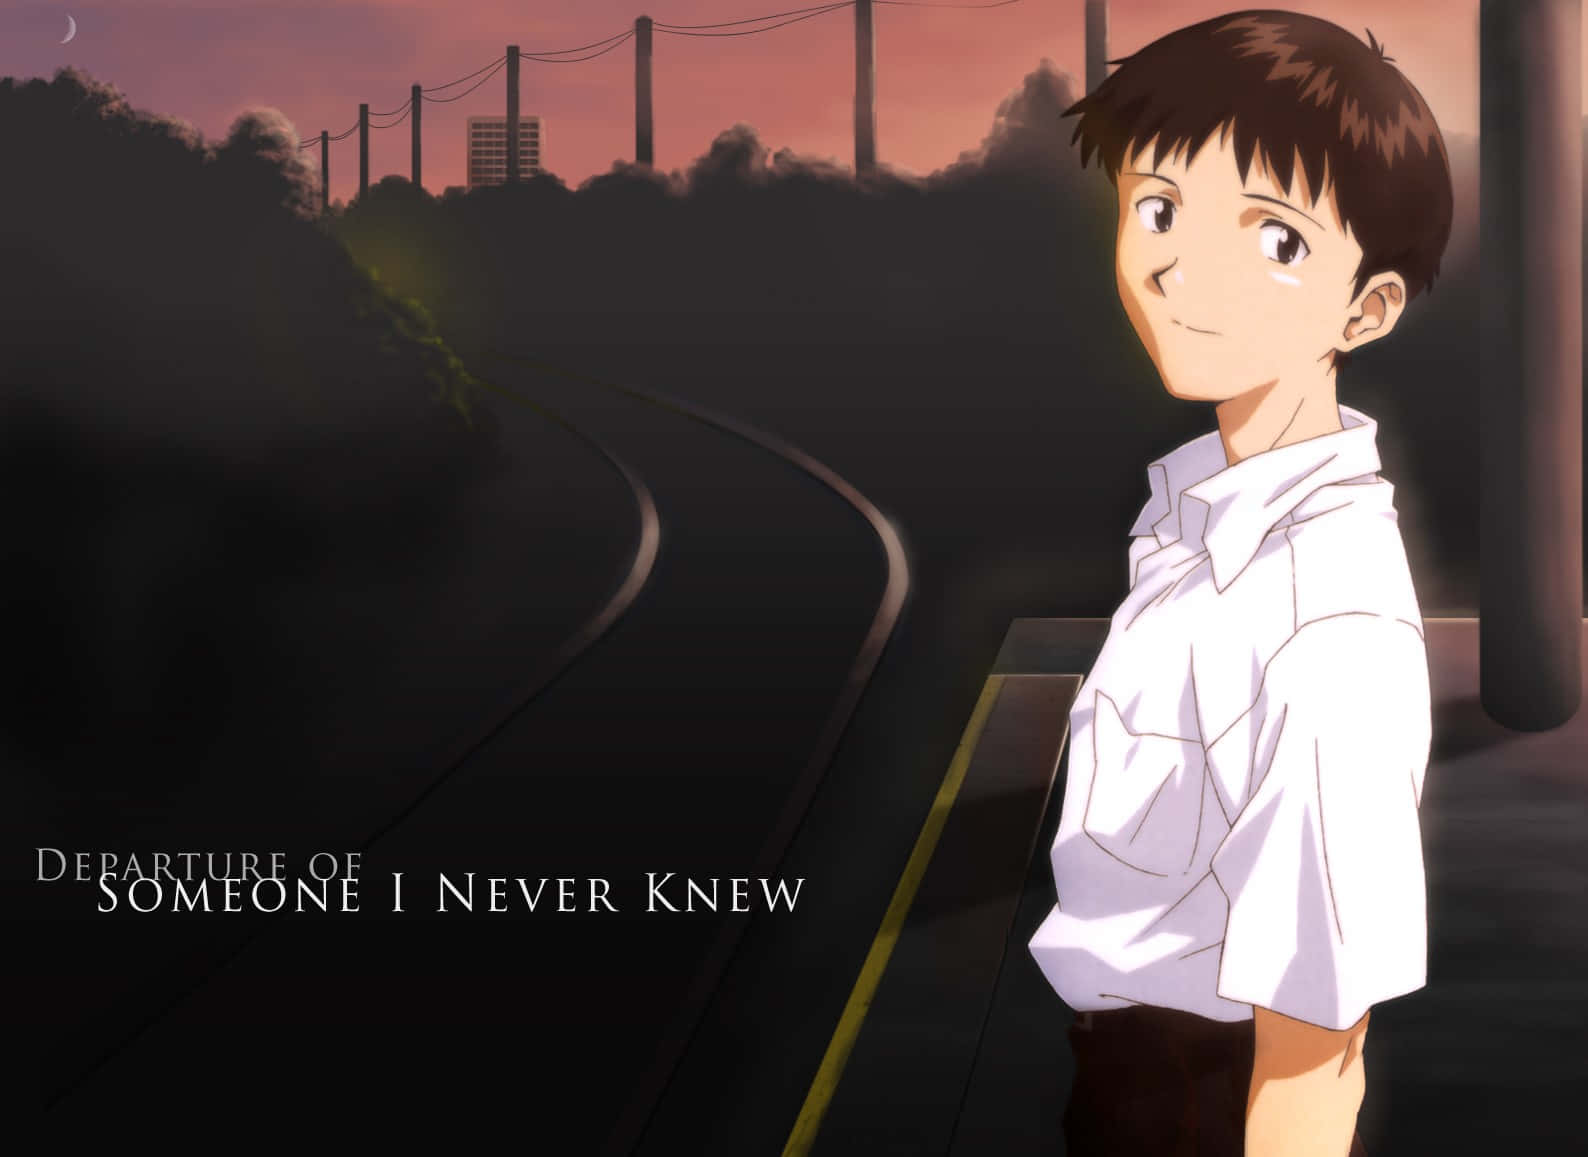 Afrejse af nogen, jeg aldrig kendte Shinji Ikari. Wallpaper